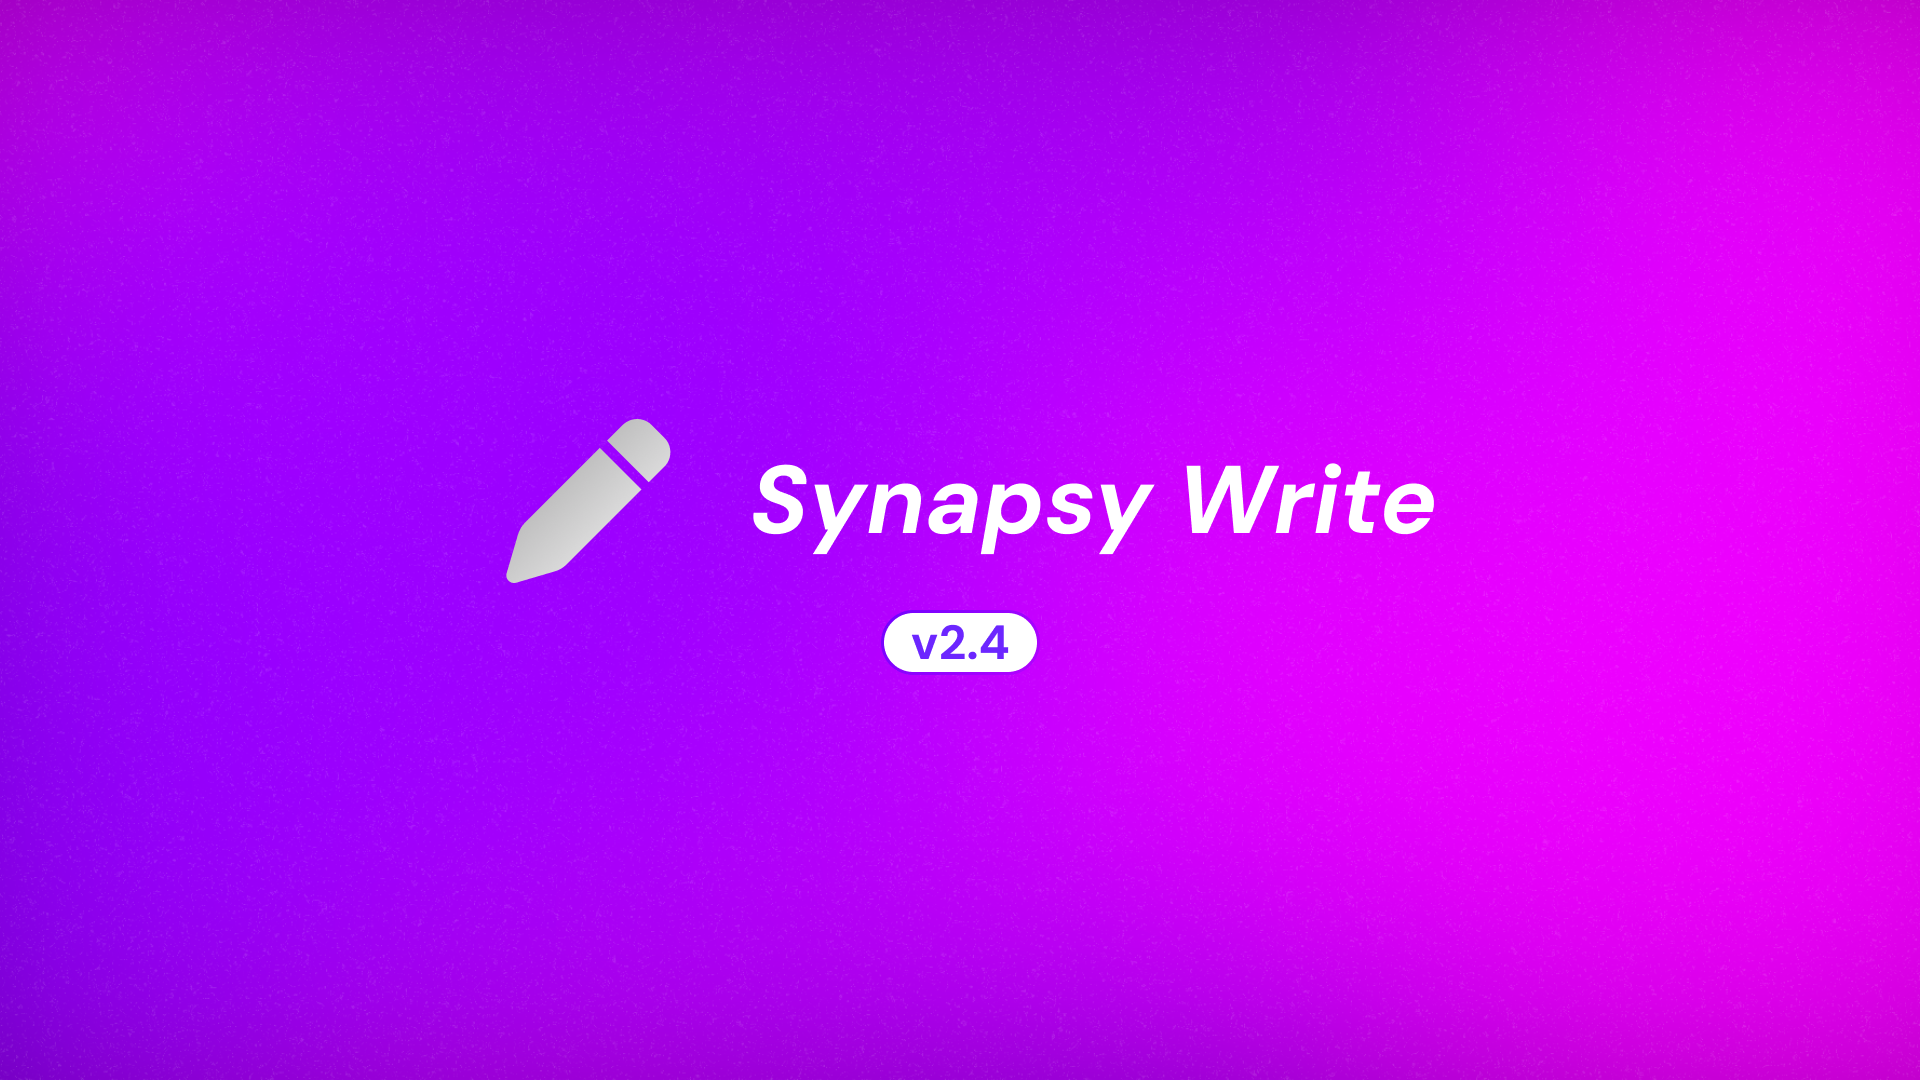 Synapsy Write v2.4.0 Changelog